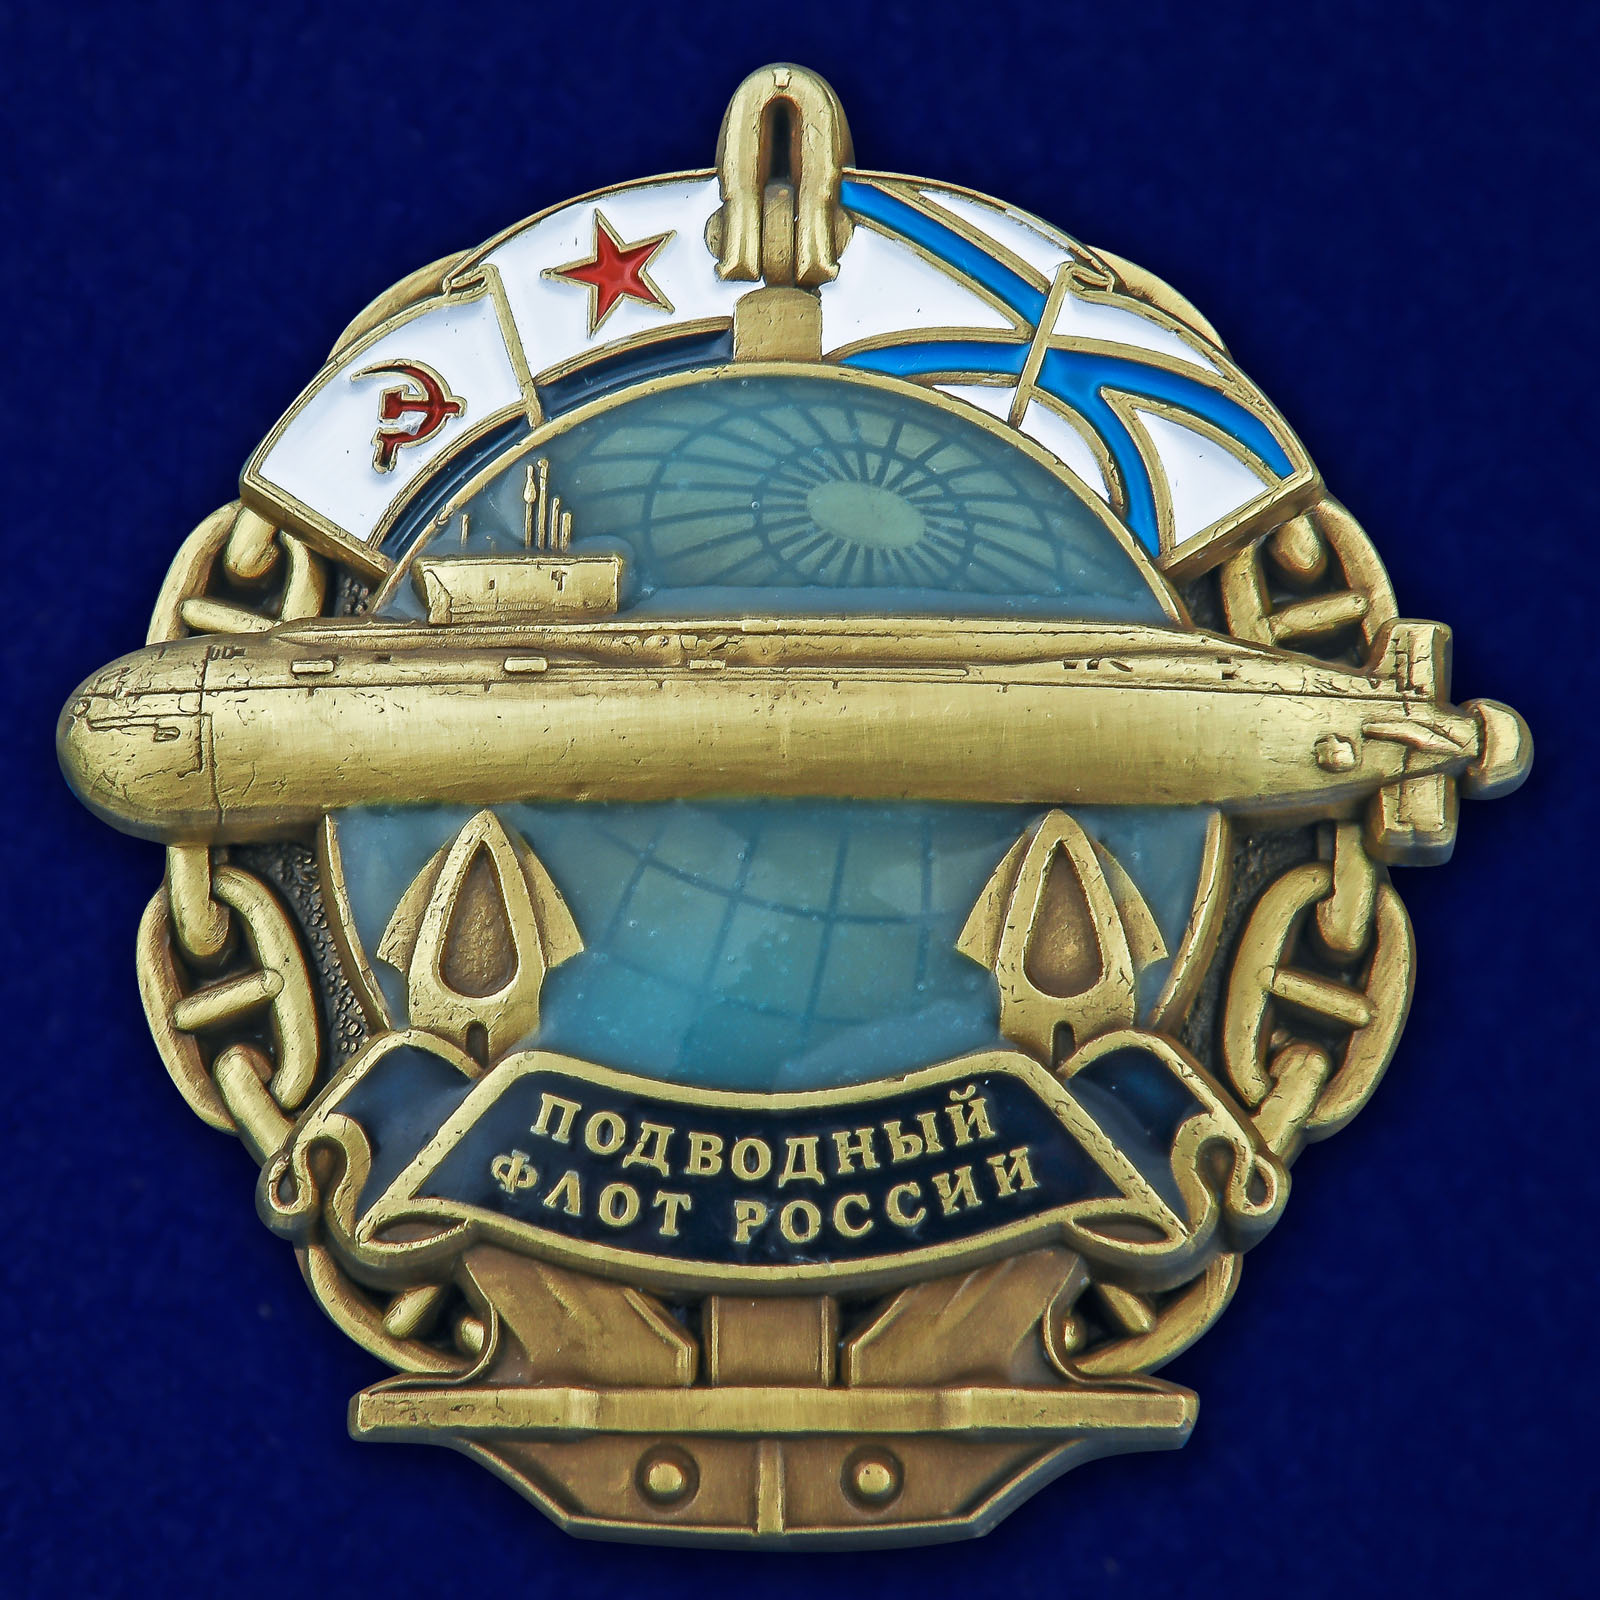 Купить латунный знак Подводный флот России онлайн